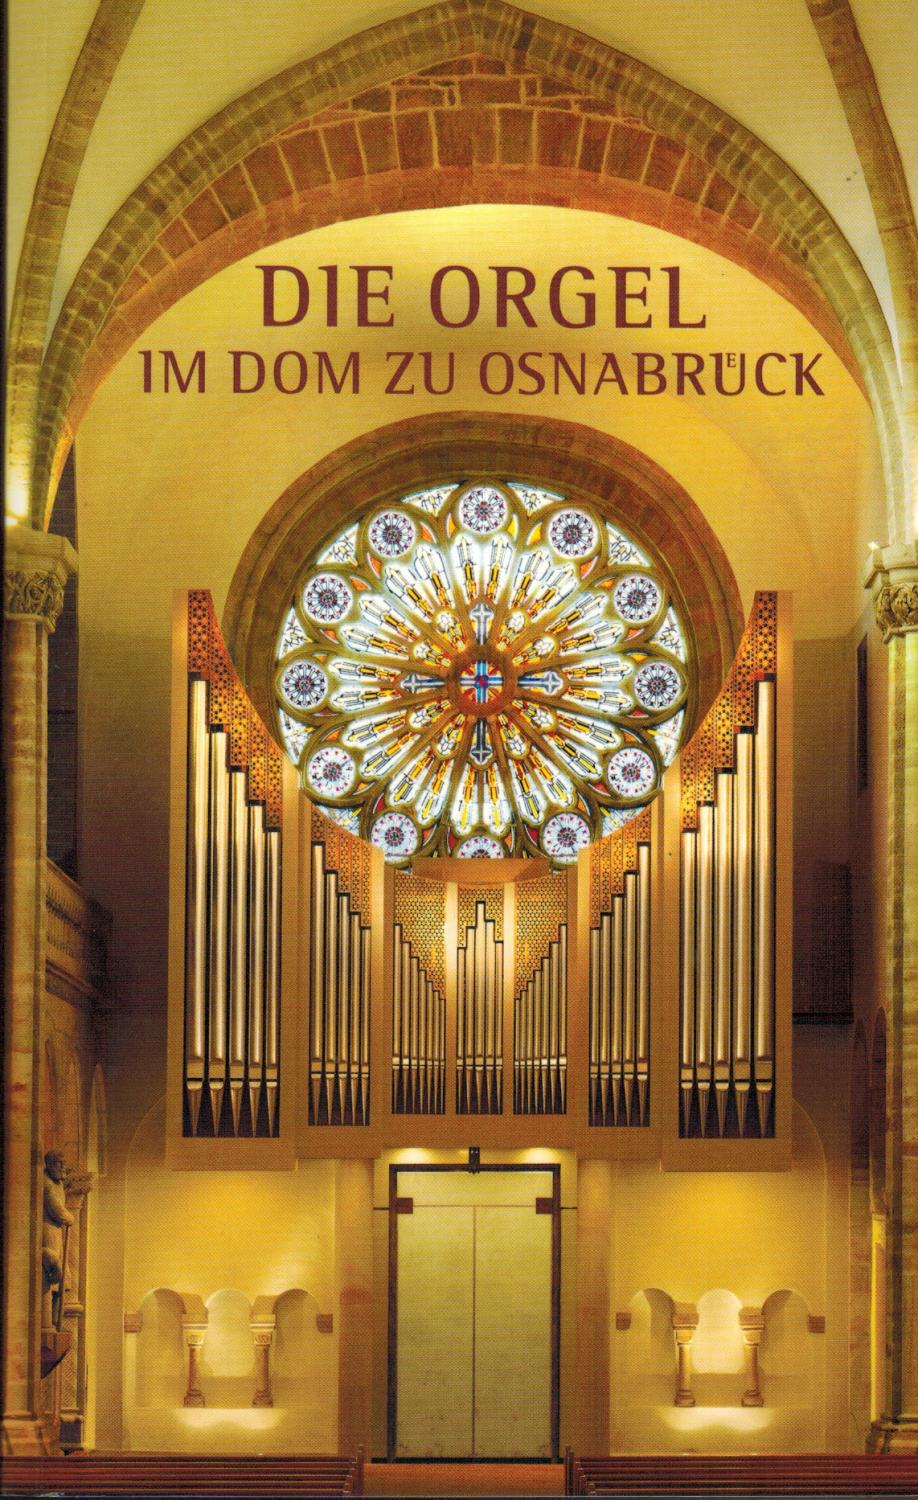 Die Orgel im Dom zu Osnabrück: Zur Weihe der Orgel im Dom zu Osnabrück am 13. Dezember 2003 durch den Bischof von Osnabrück Dr. Franz-Josef Bode - Kieselbach, Burckhard; Domkapitel Osnabrück